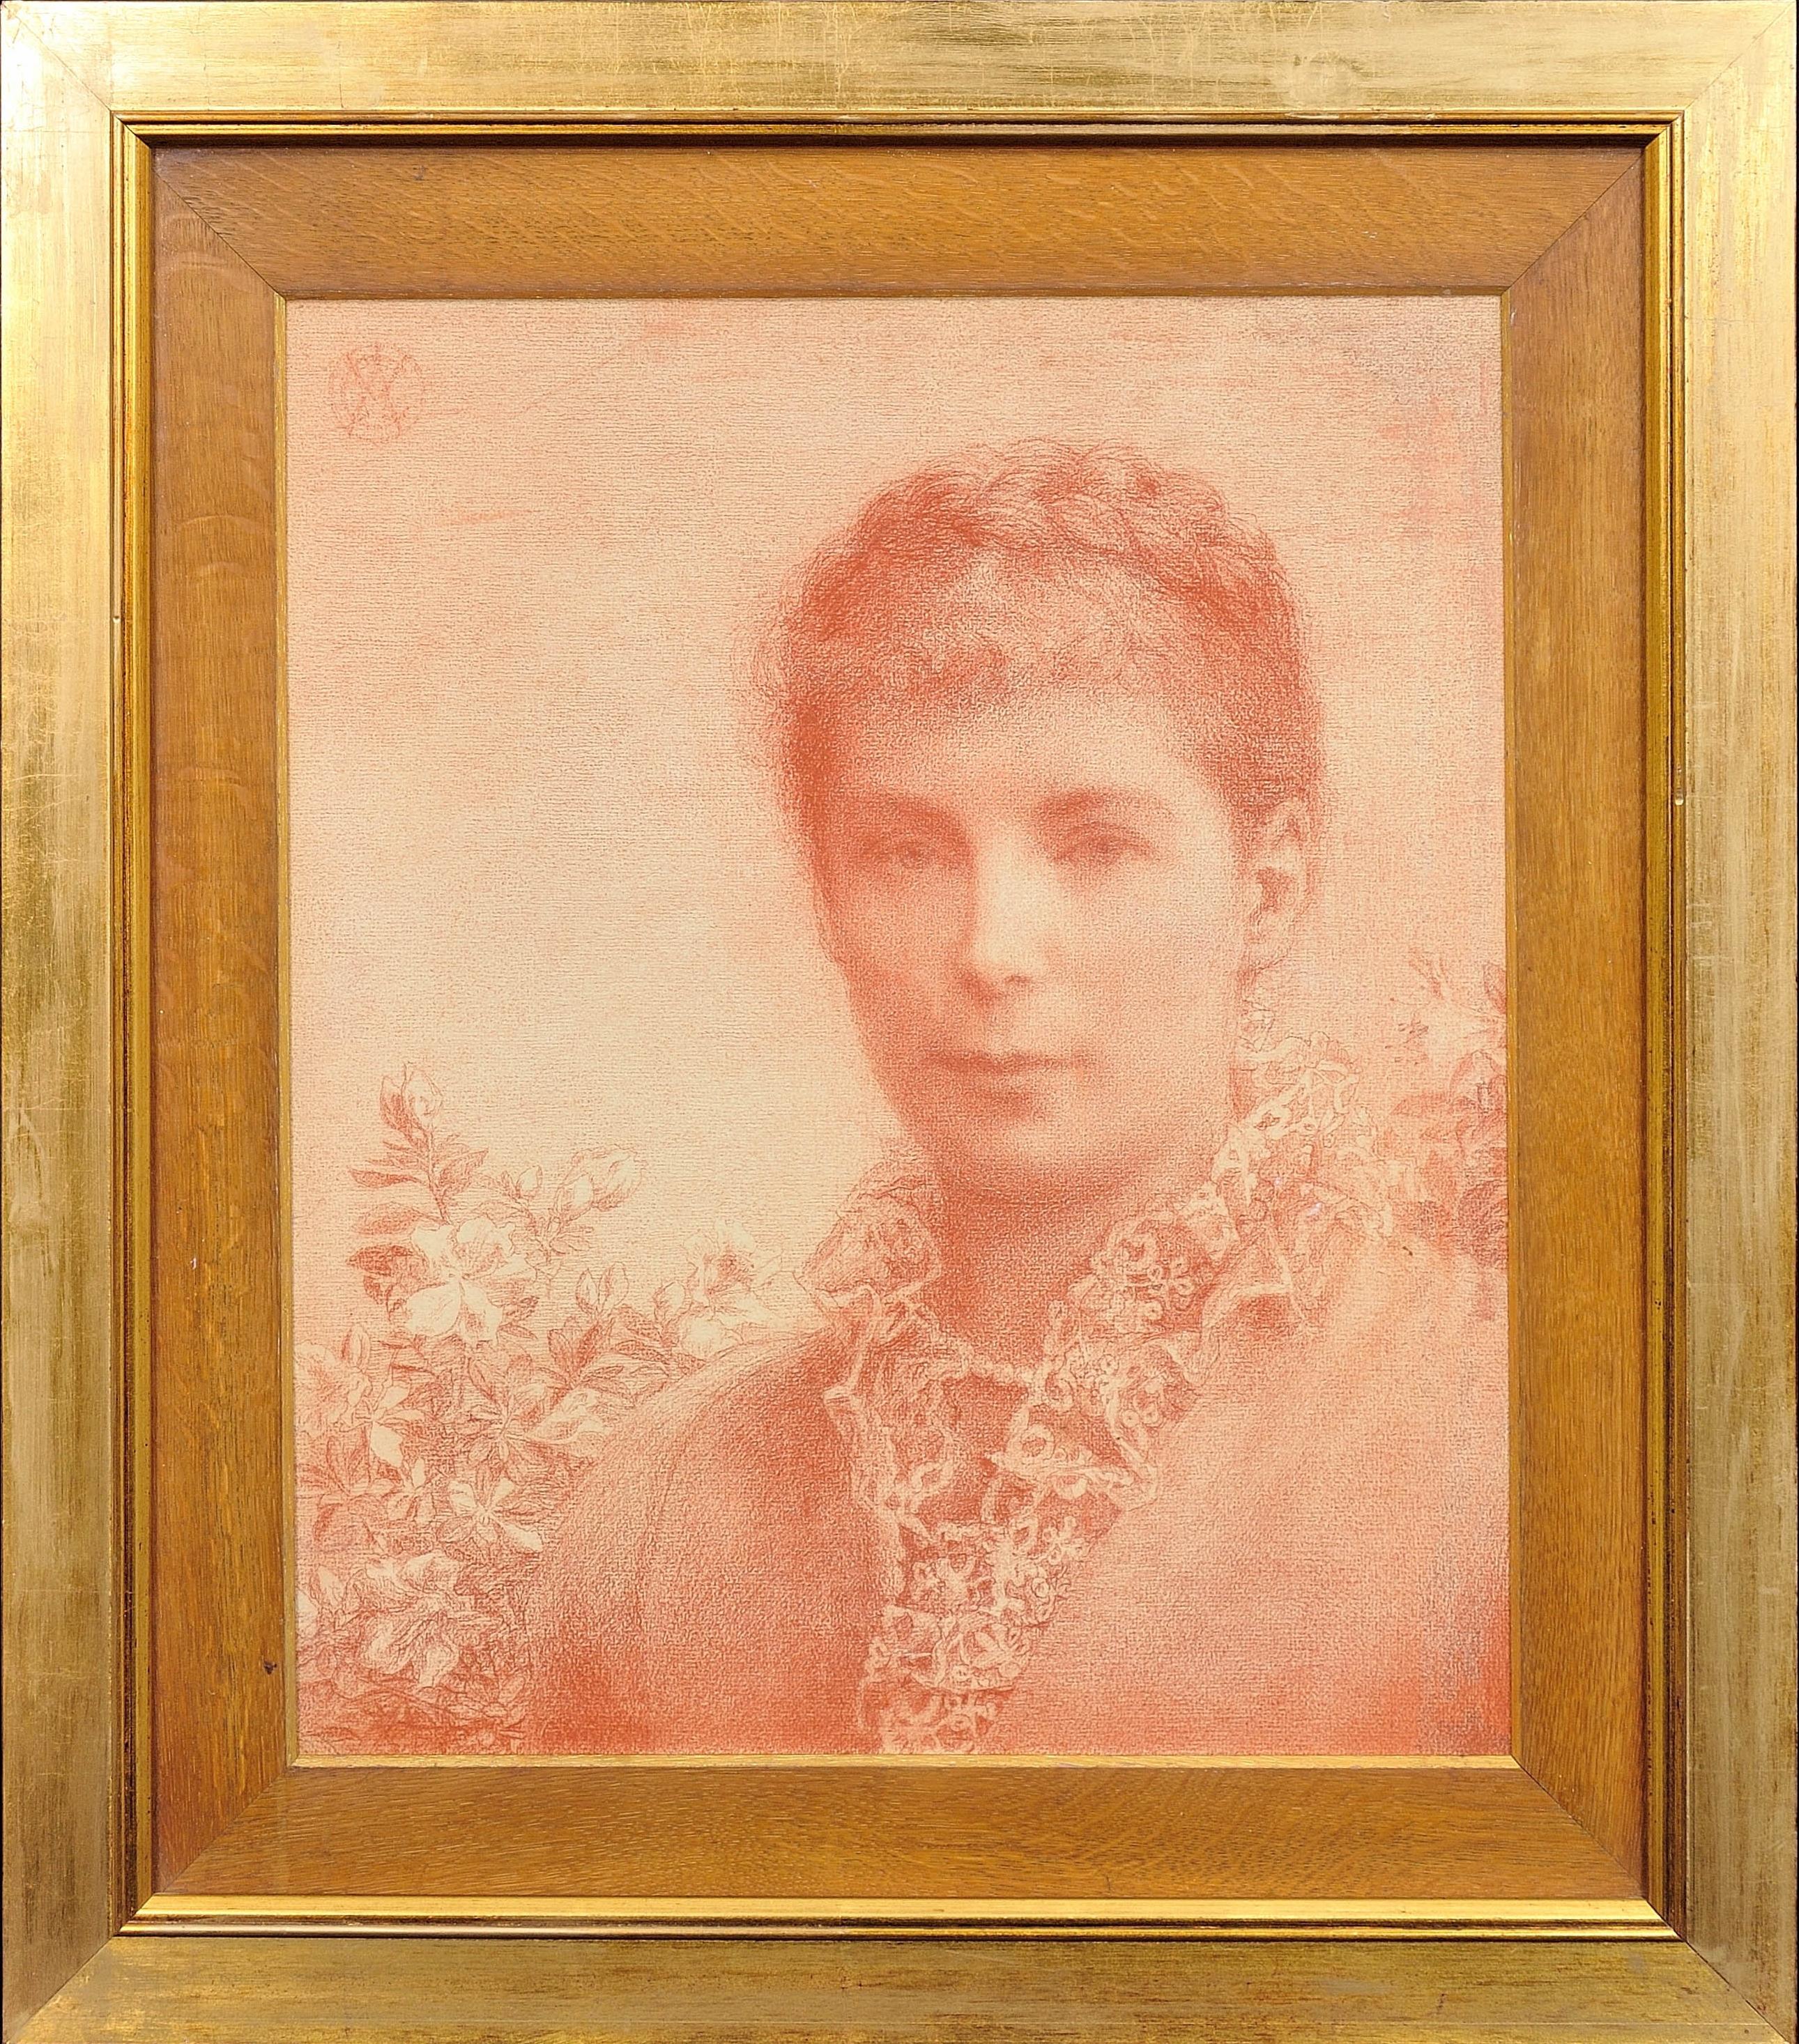 Alice Mary Chambers Portrait – Ästhetische Phase der Präraffaelitischen Bewegung Ende des 19. Jahrhunderts. Sanguine Rote Kreide